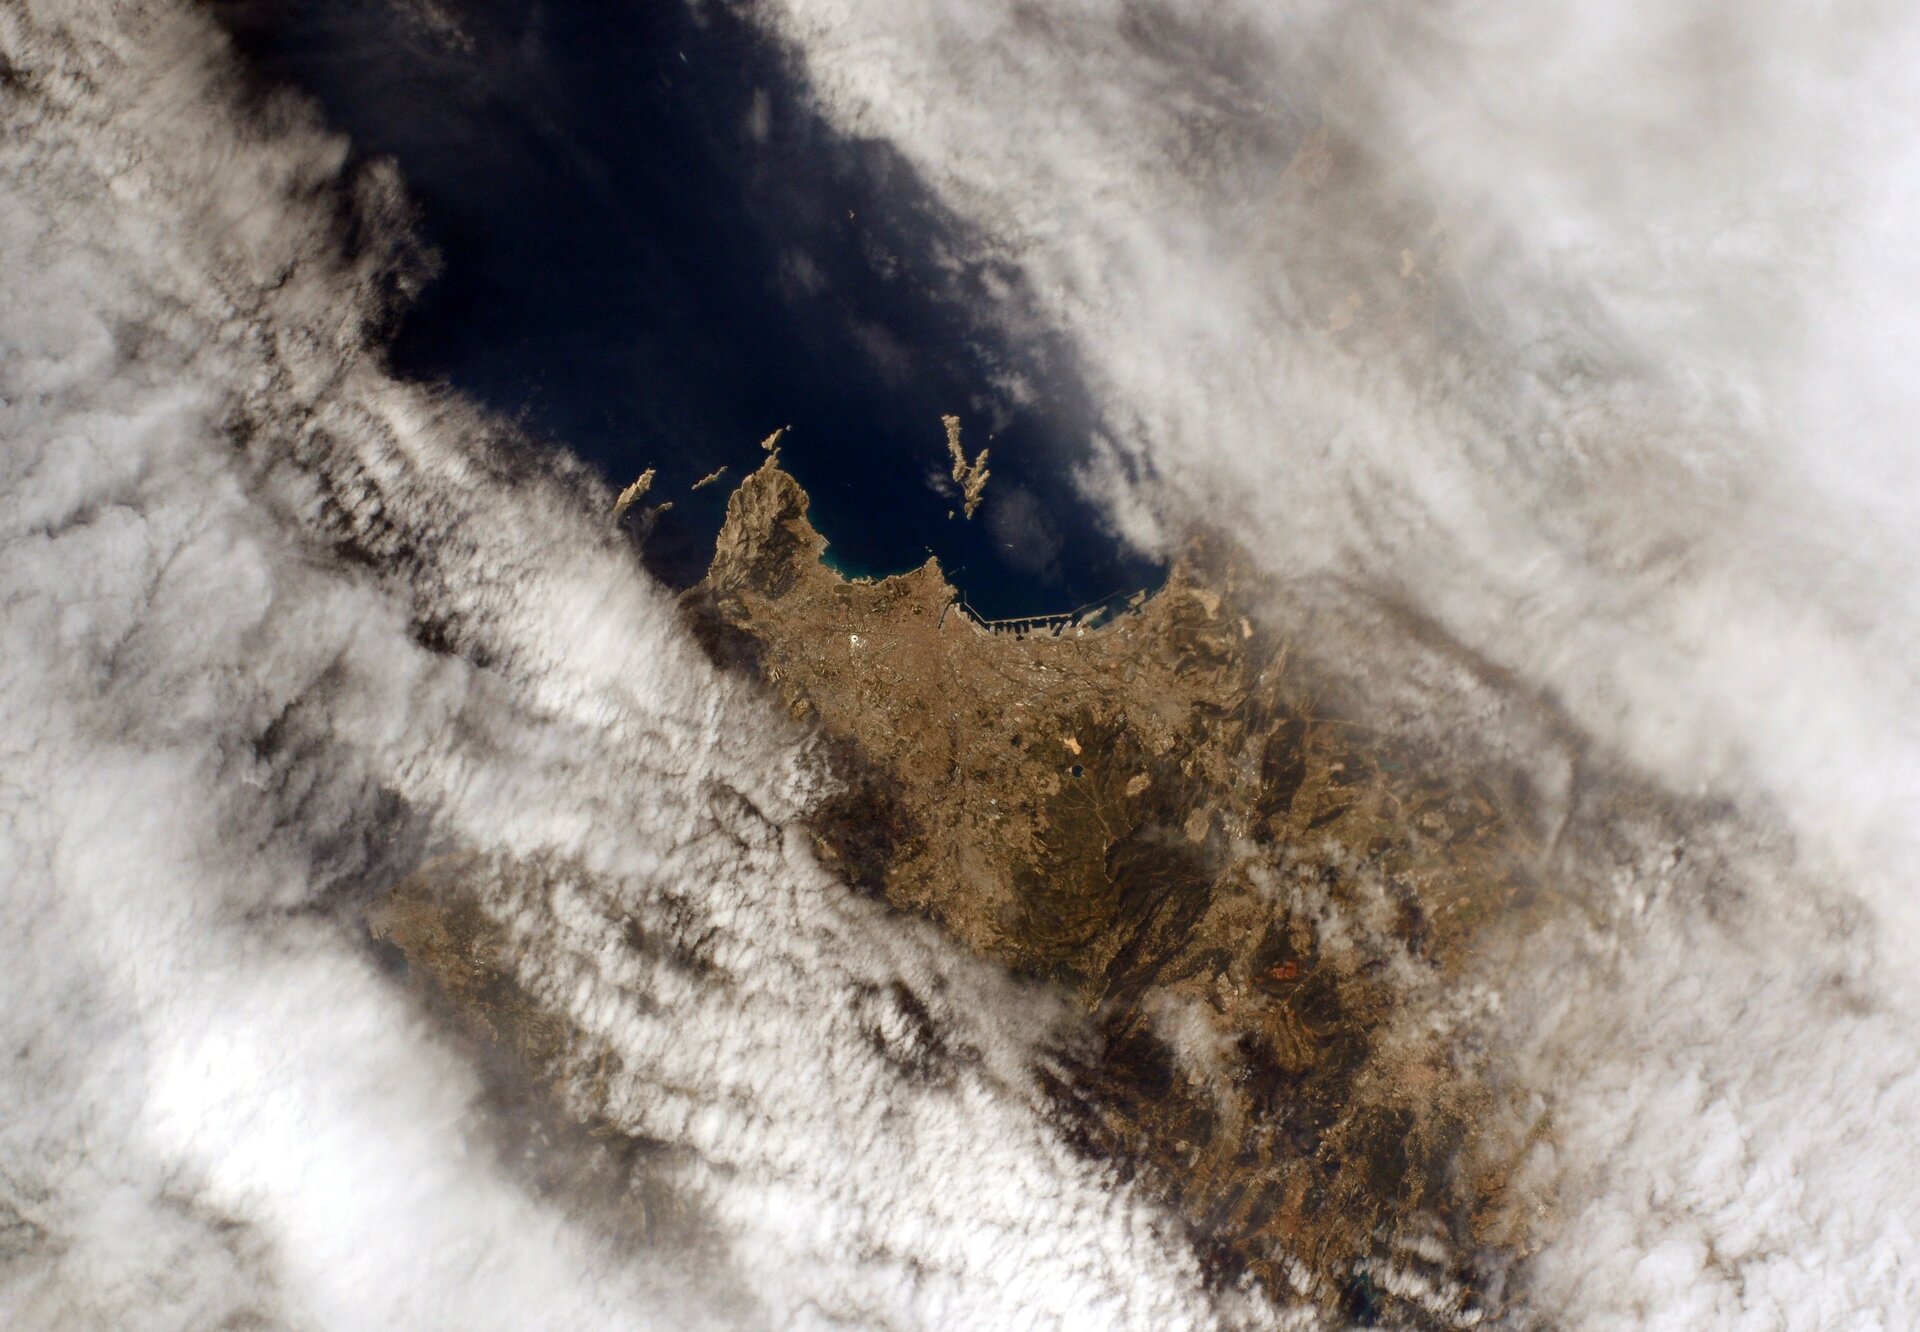 Marseille, France, vue depuis la Station spatiale